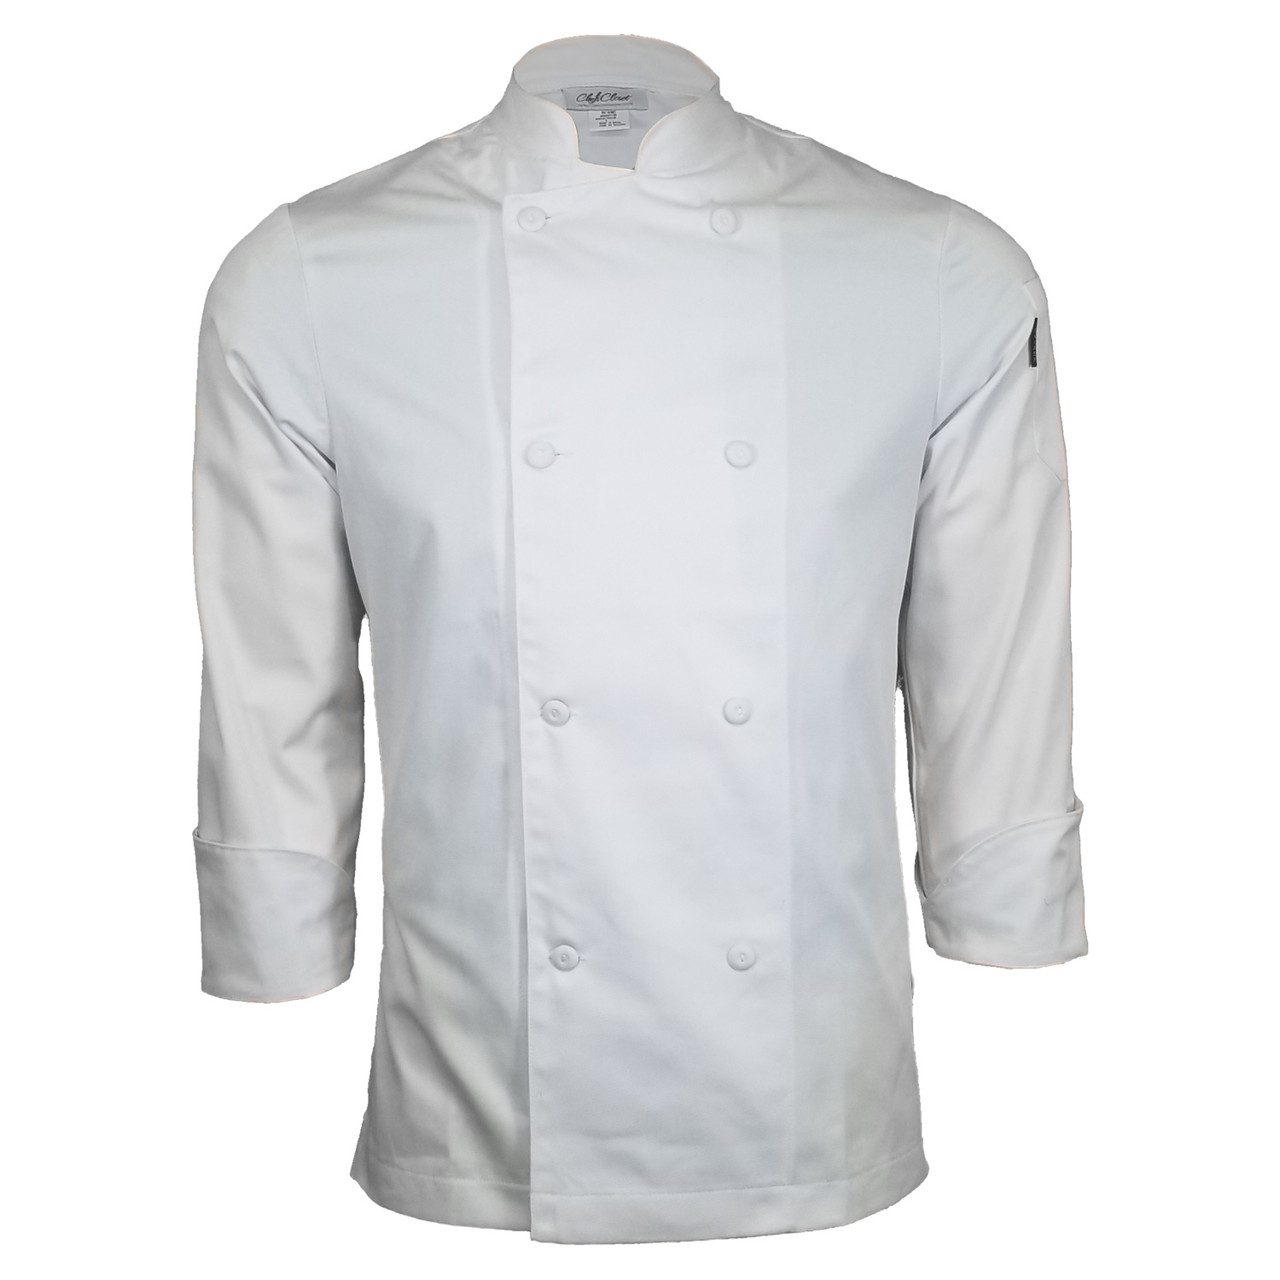 New Chef Revival Chef Jacket XS 2XL 3XL 4XL 5XL Black Long Sleeve 